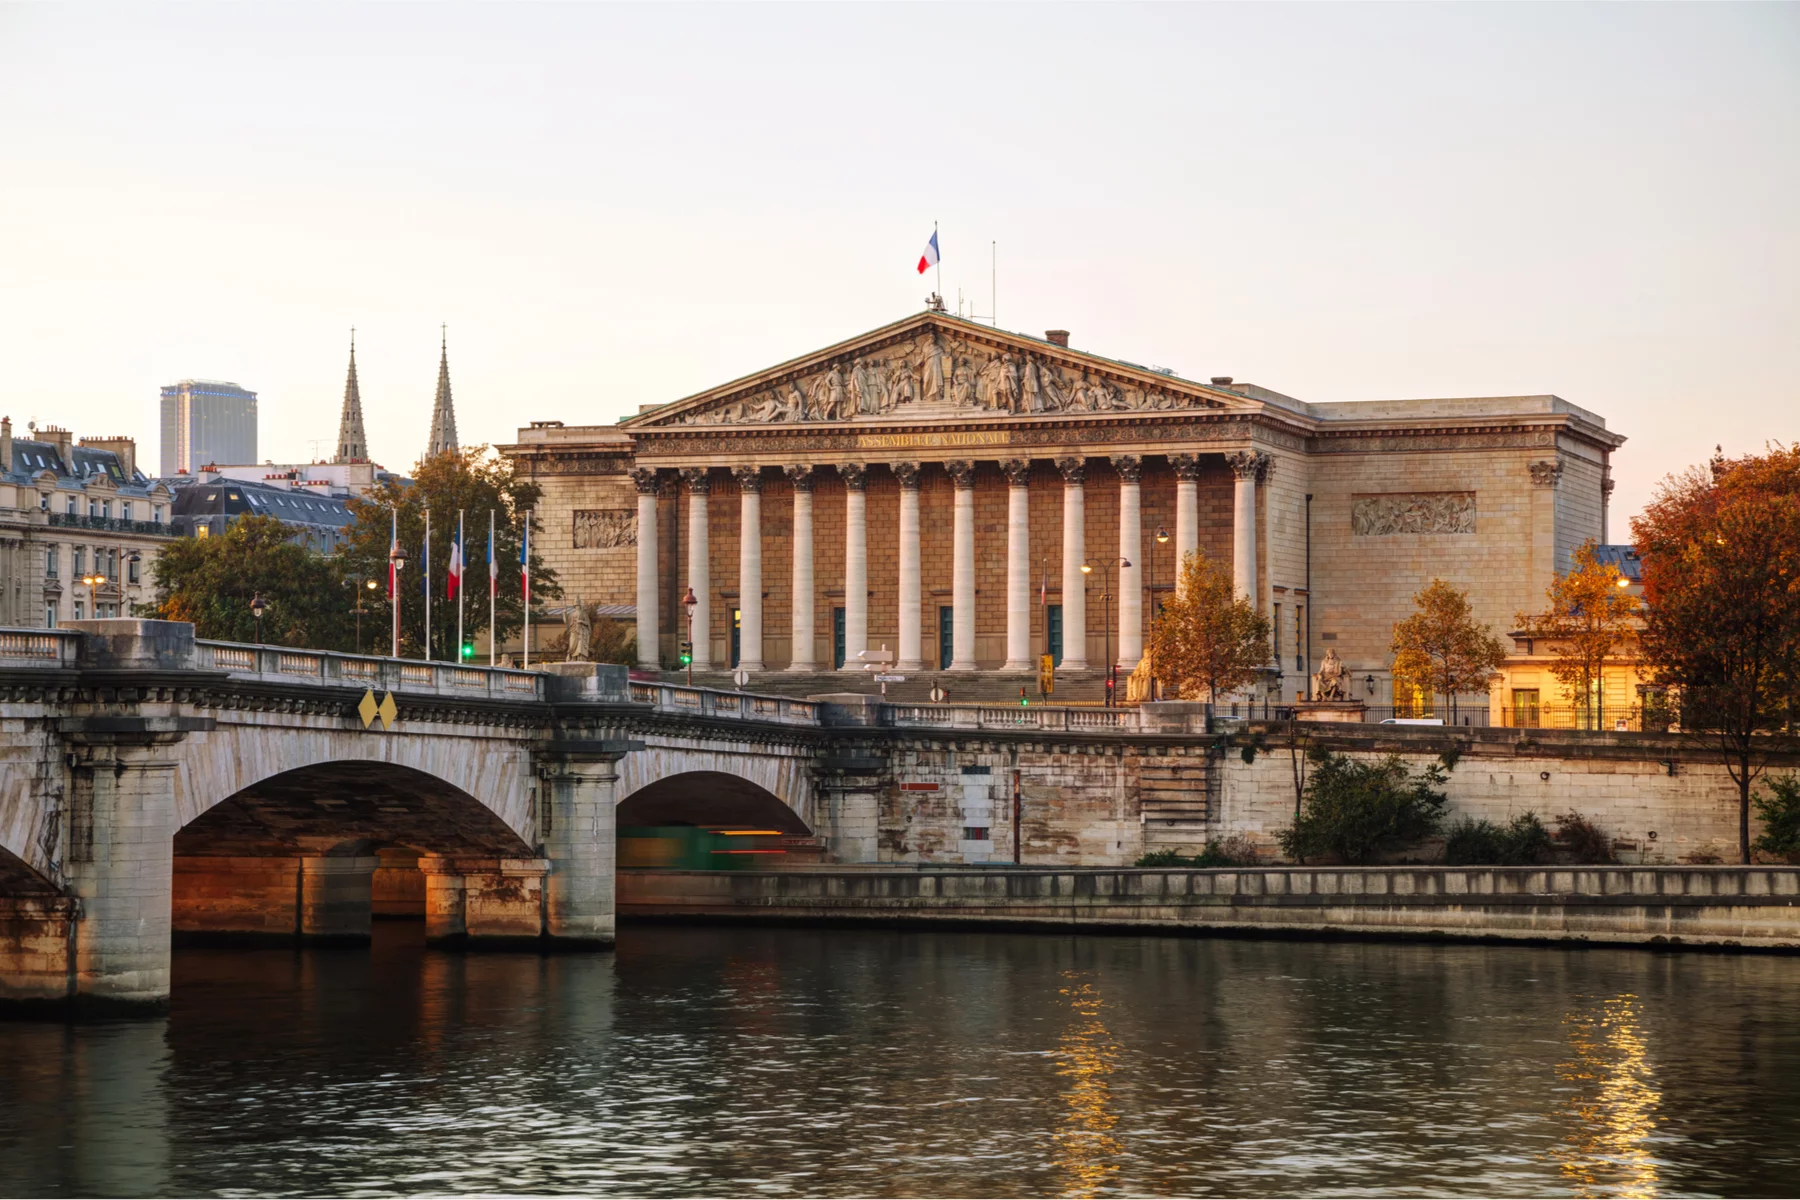 Palais Bourbon in Paris